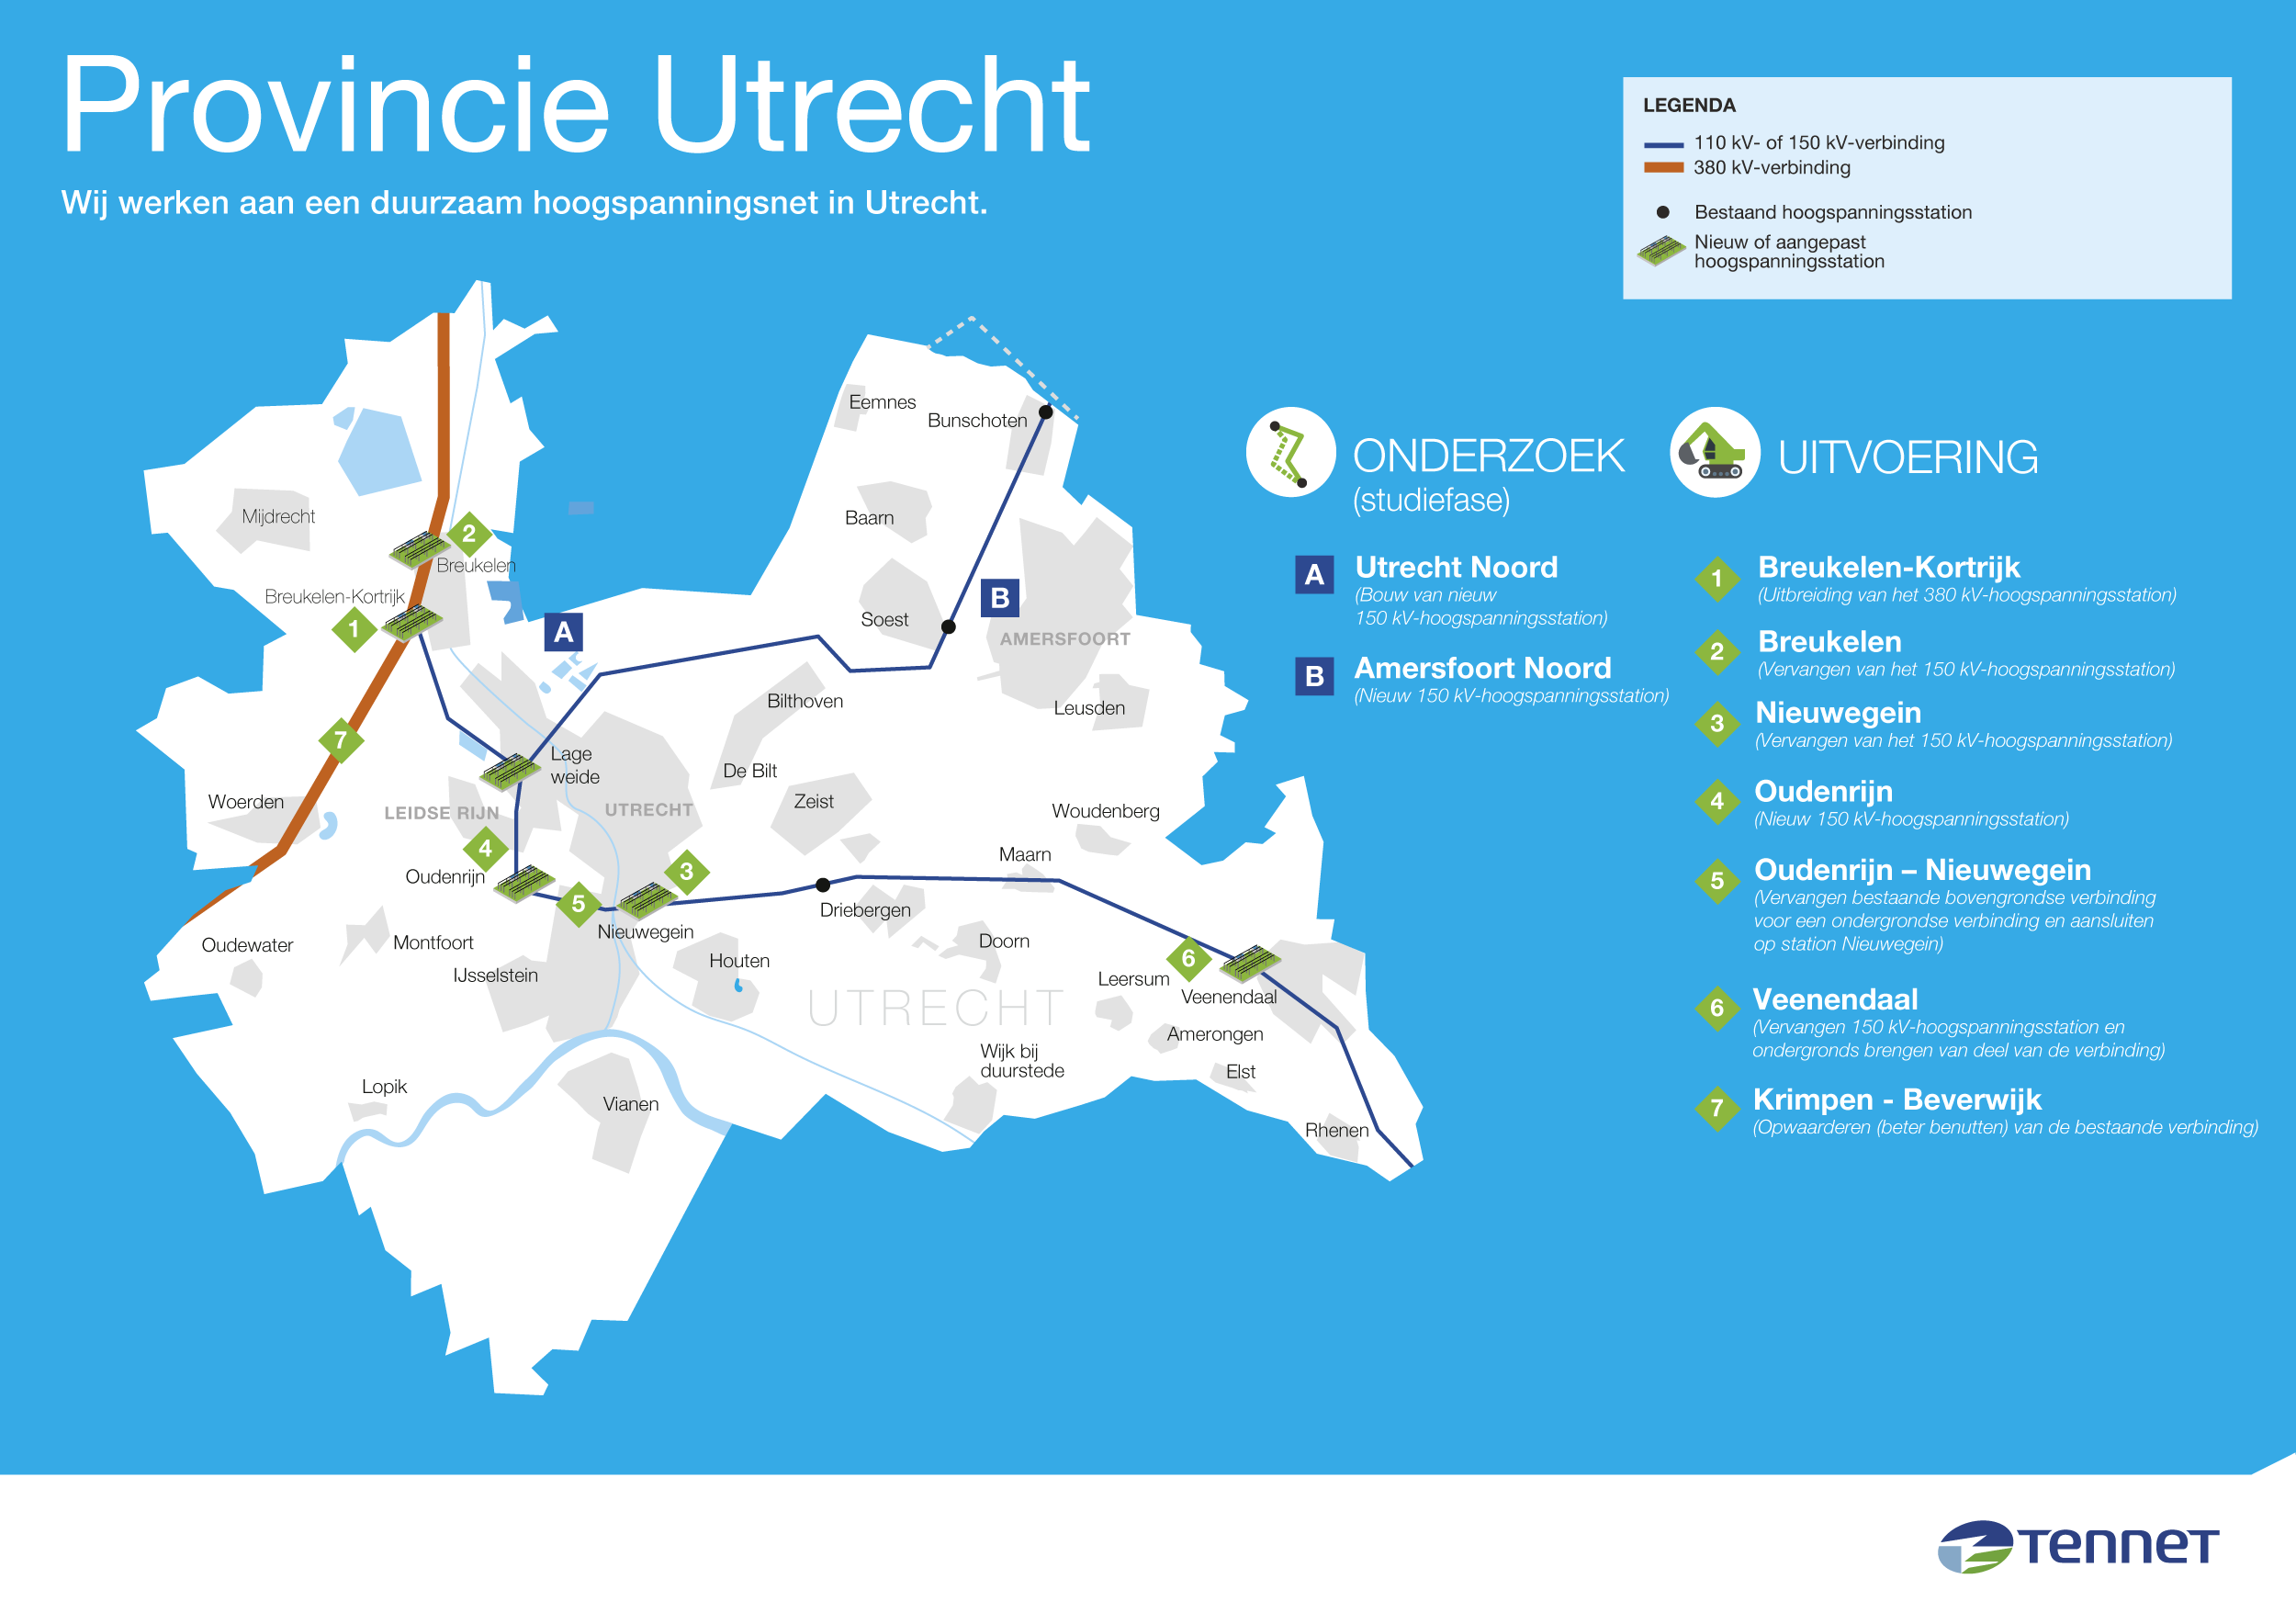 Werkzaamheden TenneT in de provincie Utrecht